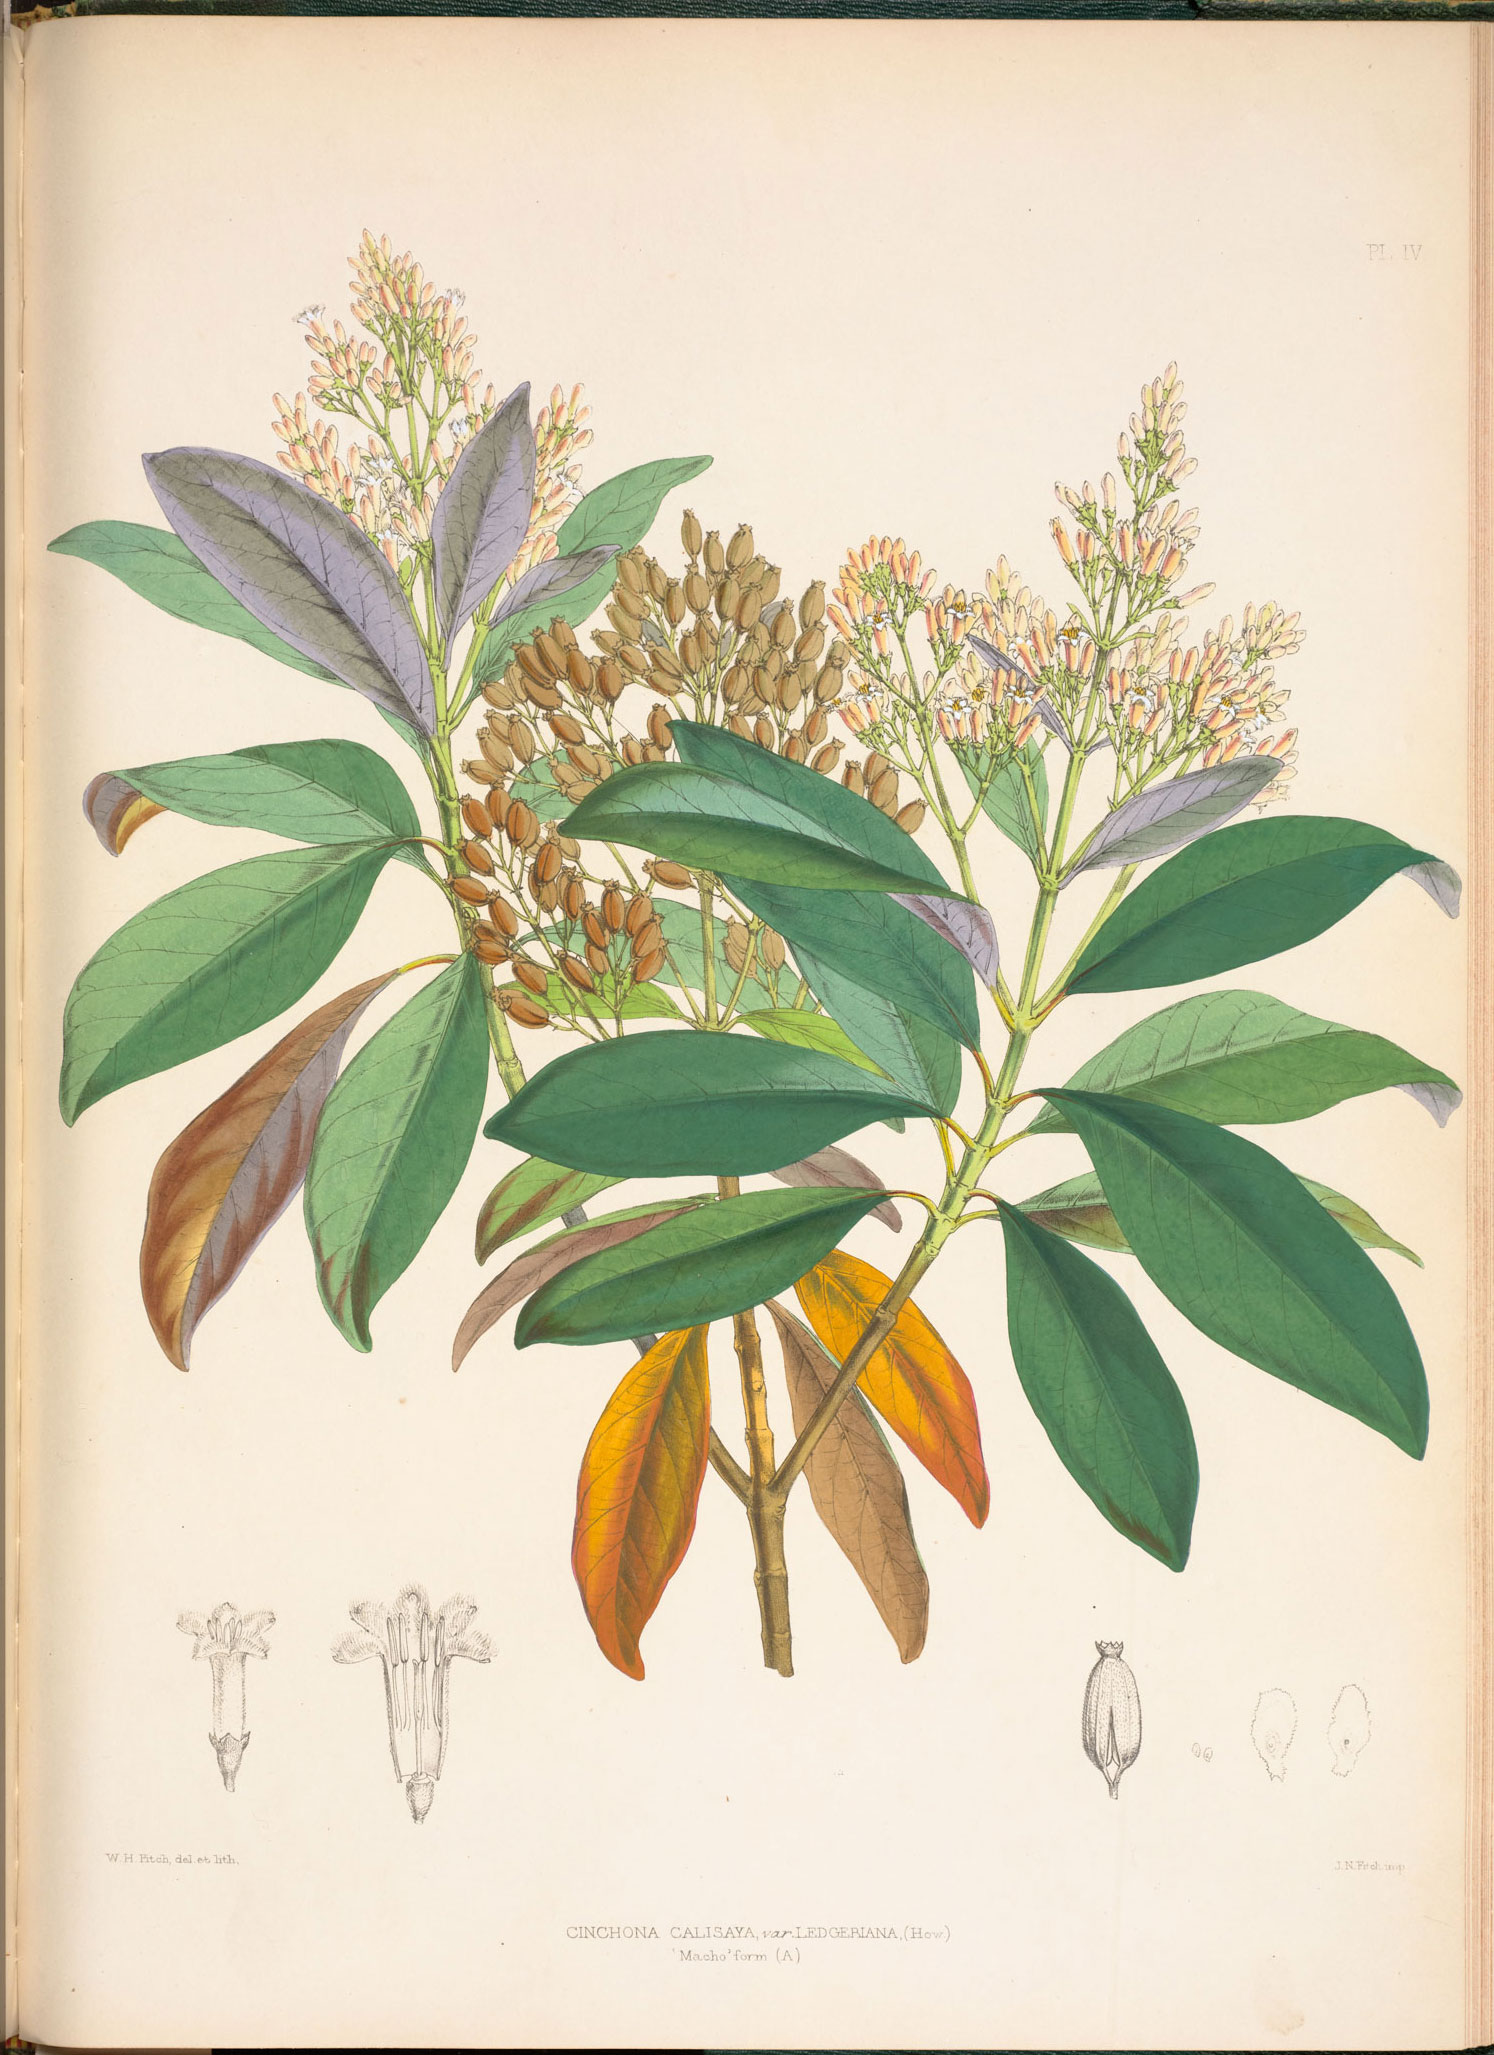 Botanical illustration of Cinchona leaves